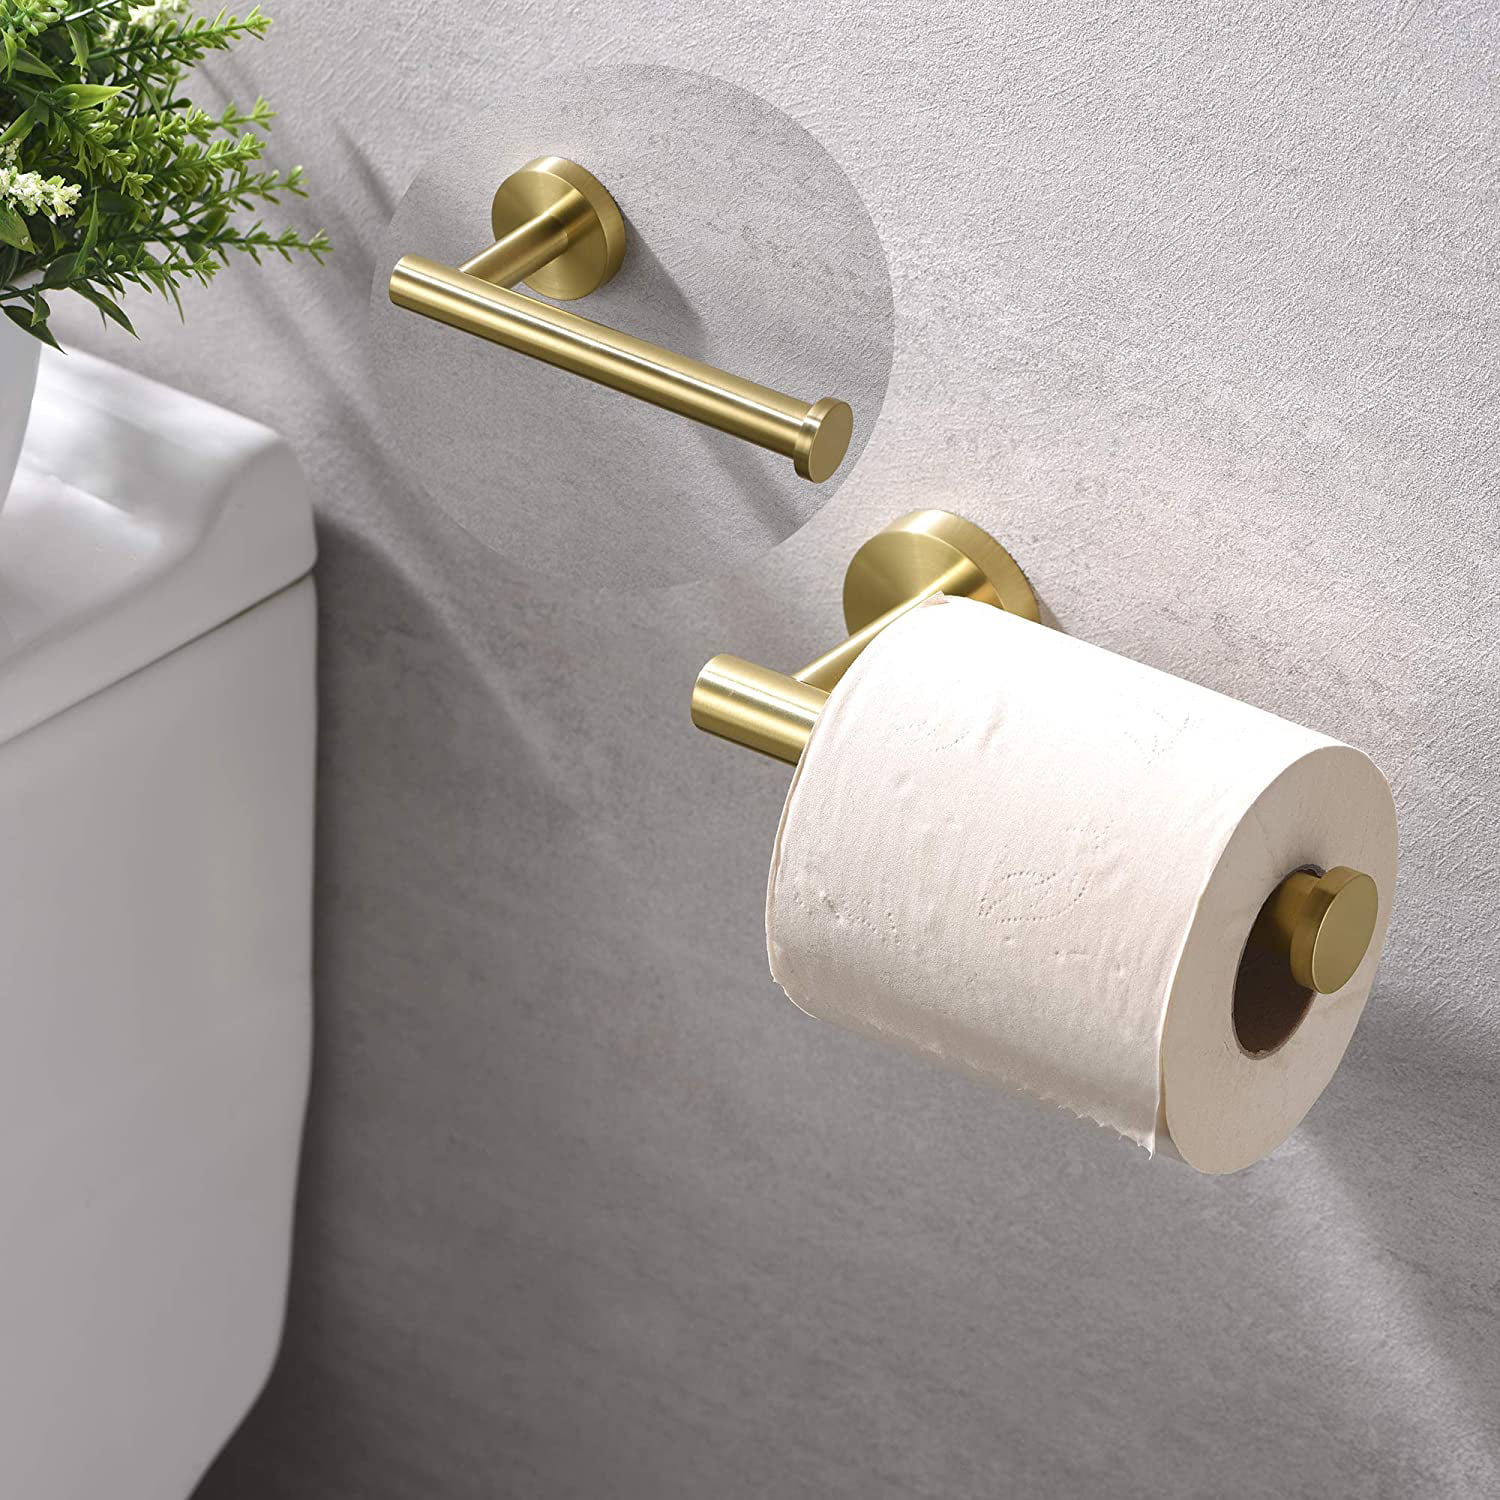 Dural Luxury Golden Deco Toilet Paper Holder Wall Mount Roll Tissue Bracket 